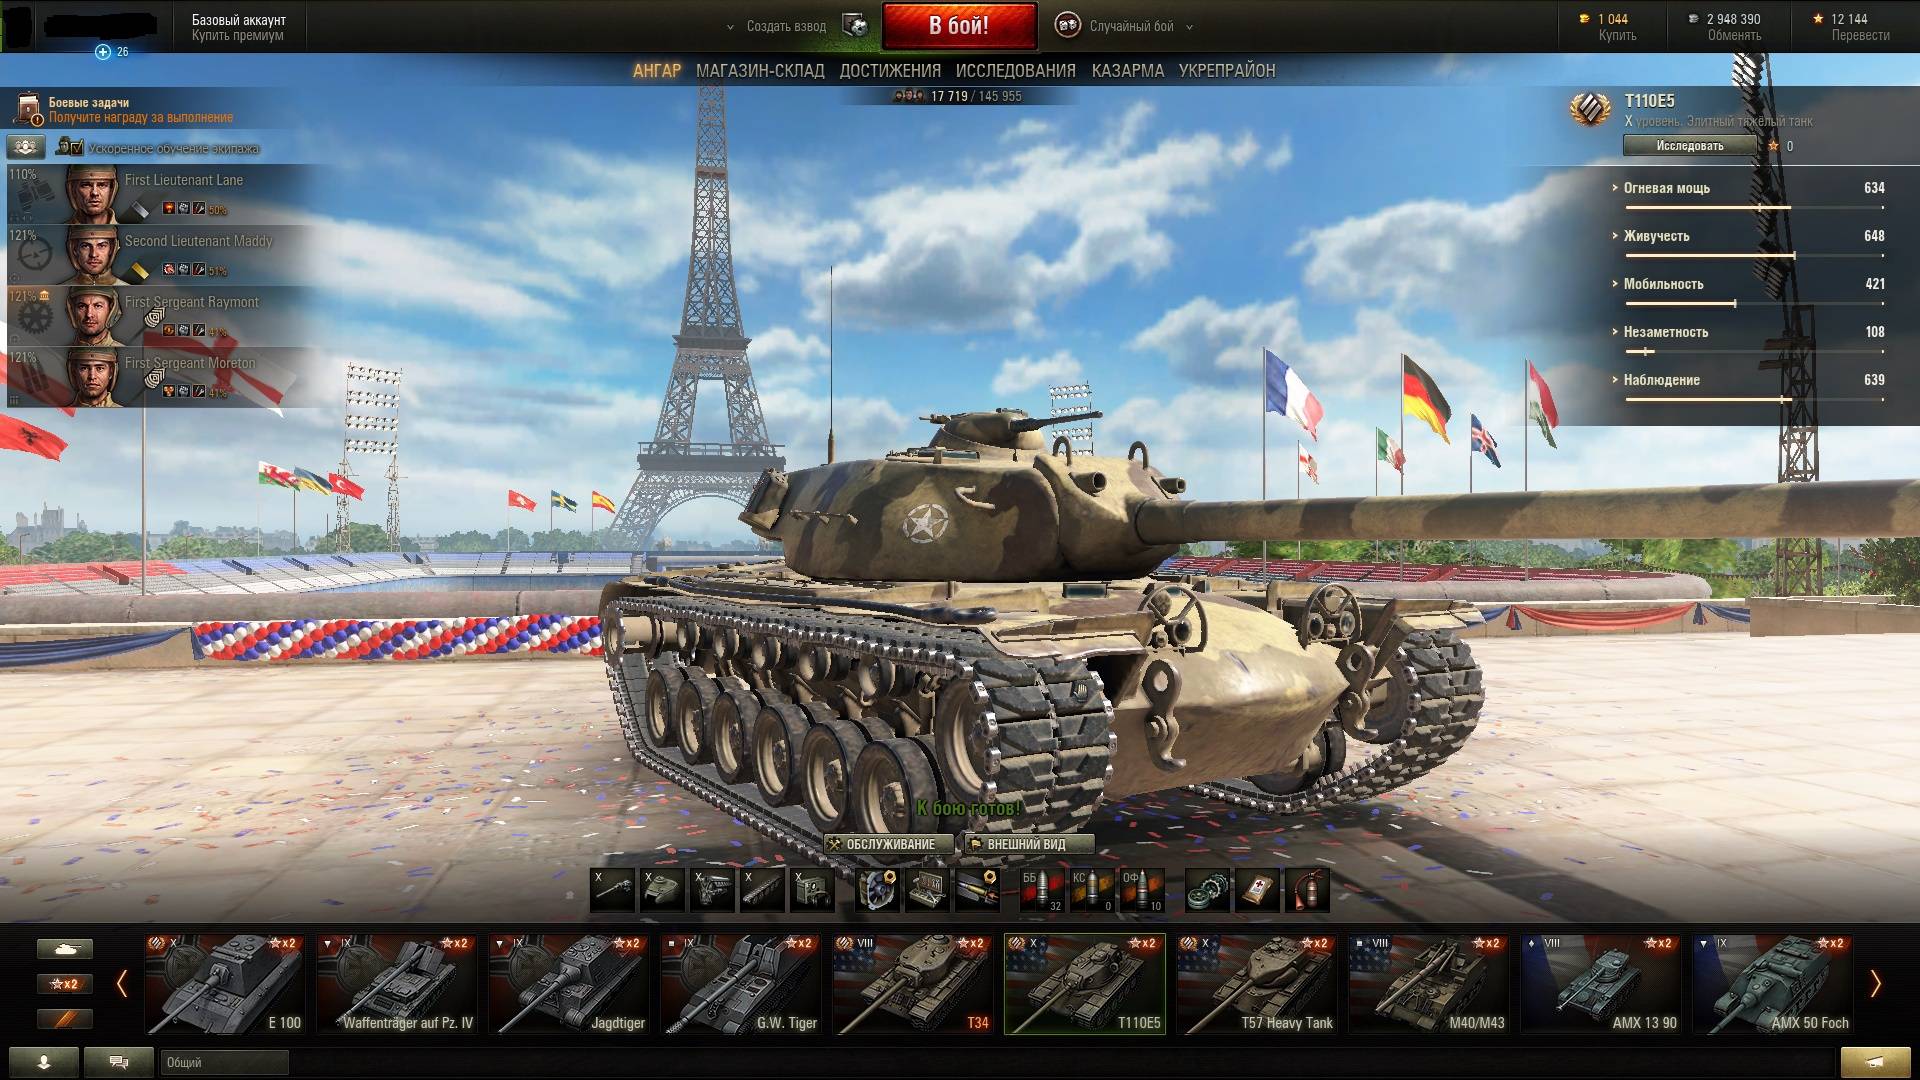 Игровой блог gameslogобзор танков в world of tanks. какой танк выбрать?